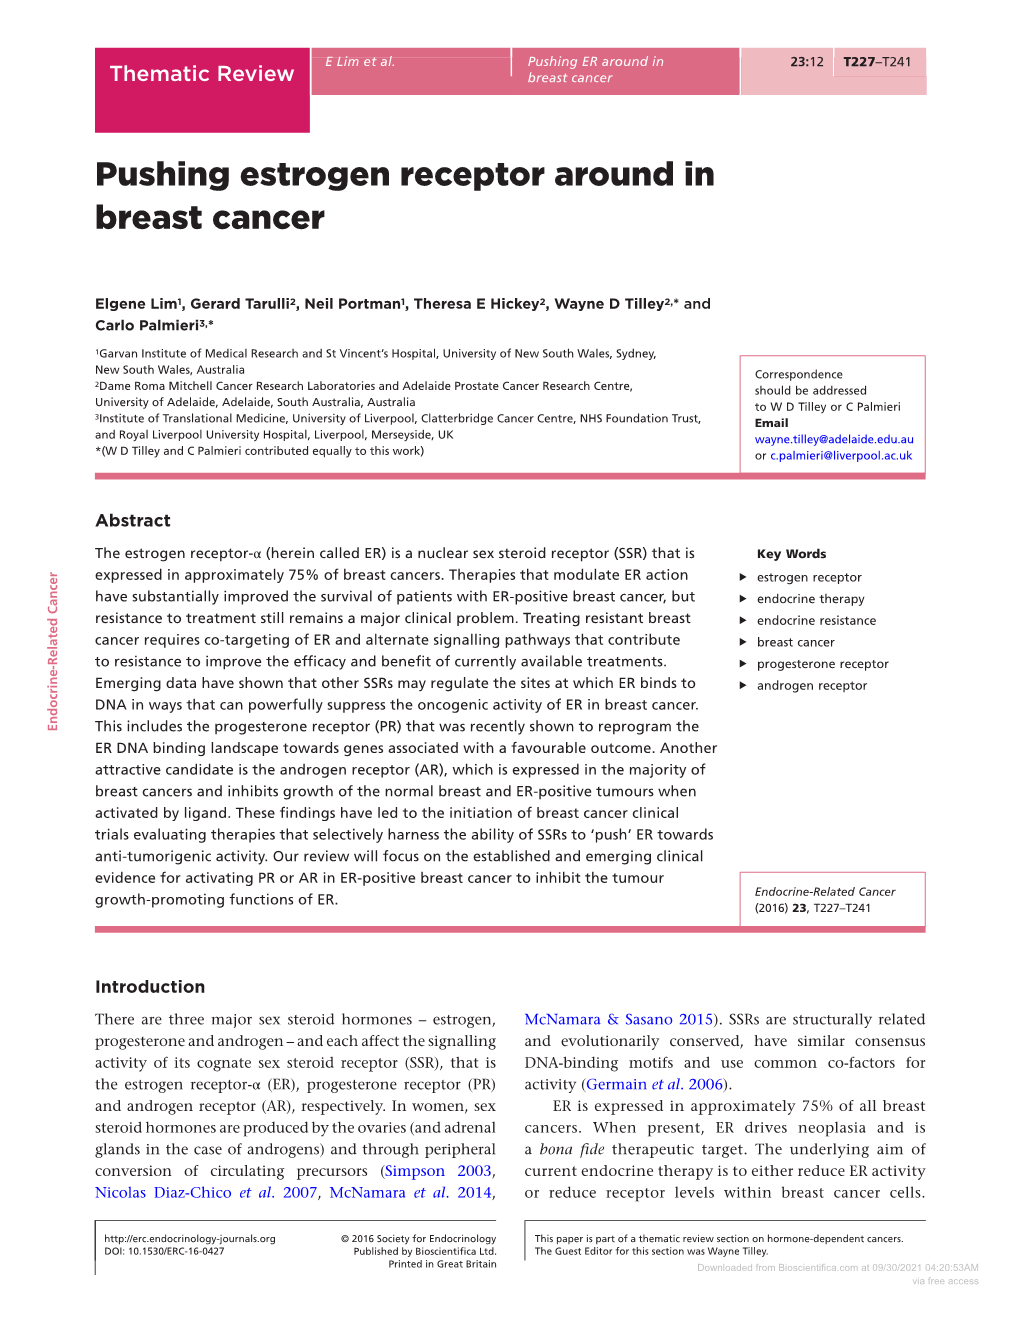 Pushing Estrogen Receptor Around in Breast Cancer